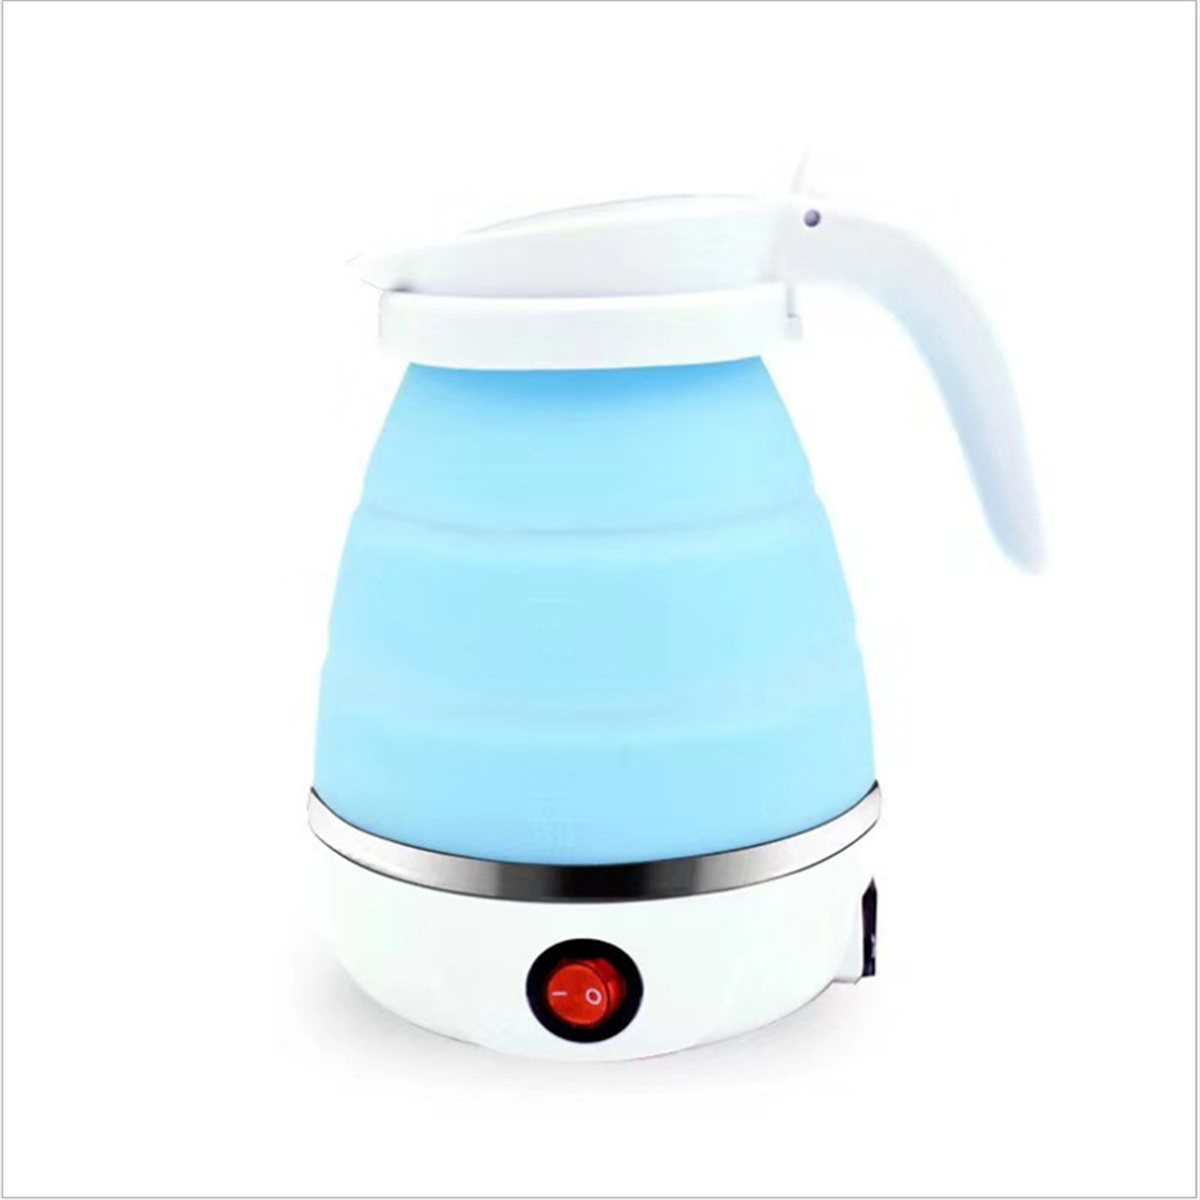 FEI Mini-Wasserkocher Wasserkocher Wasserkocher, Blau Wasserkocher Zusammenklappbarer Blau Elektrischer 304 Edelstahl